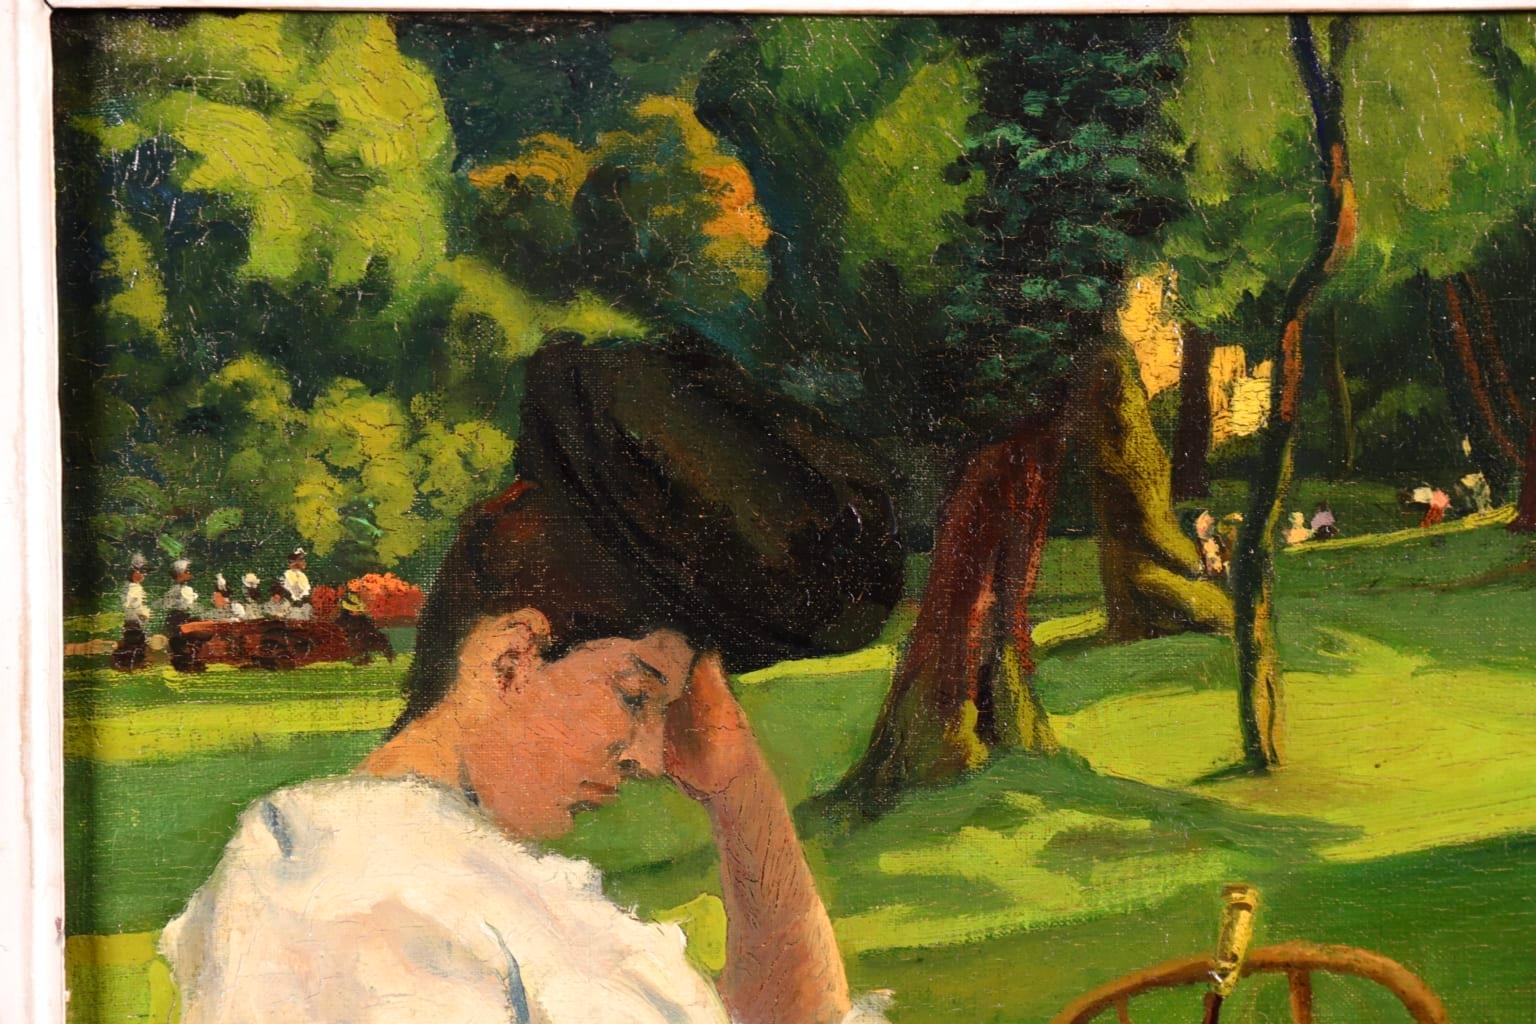 Magnifique huile sur toile de l'école impressionniste française représentant une femme élégante portant un chemisier blanc, une jupe noire et un chapeau, assise dans un fauteuil en train de lire. Son ombrelle repose sur la chaise à côté d'elle et